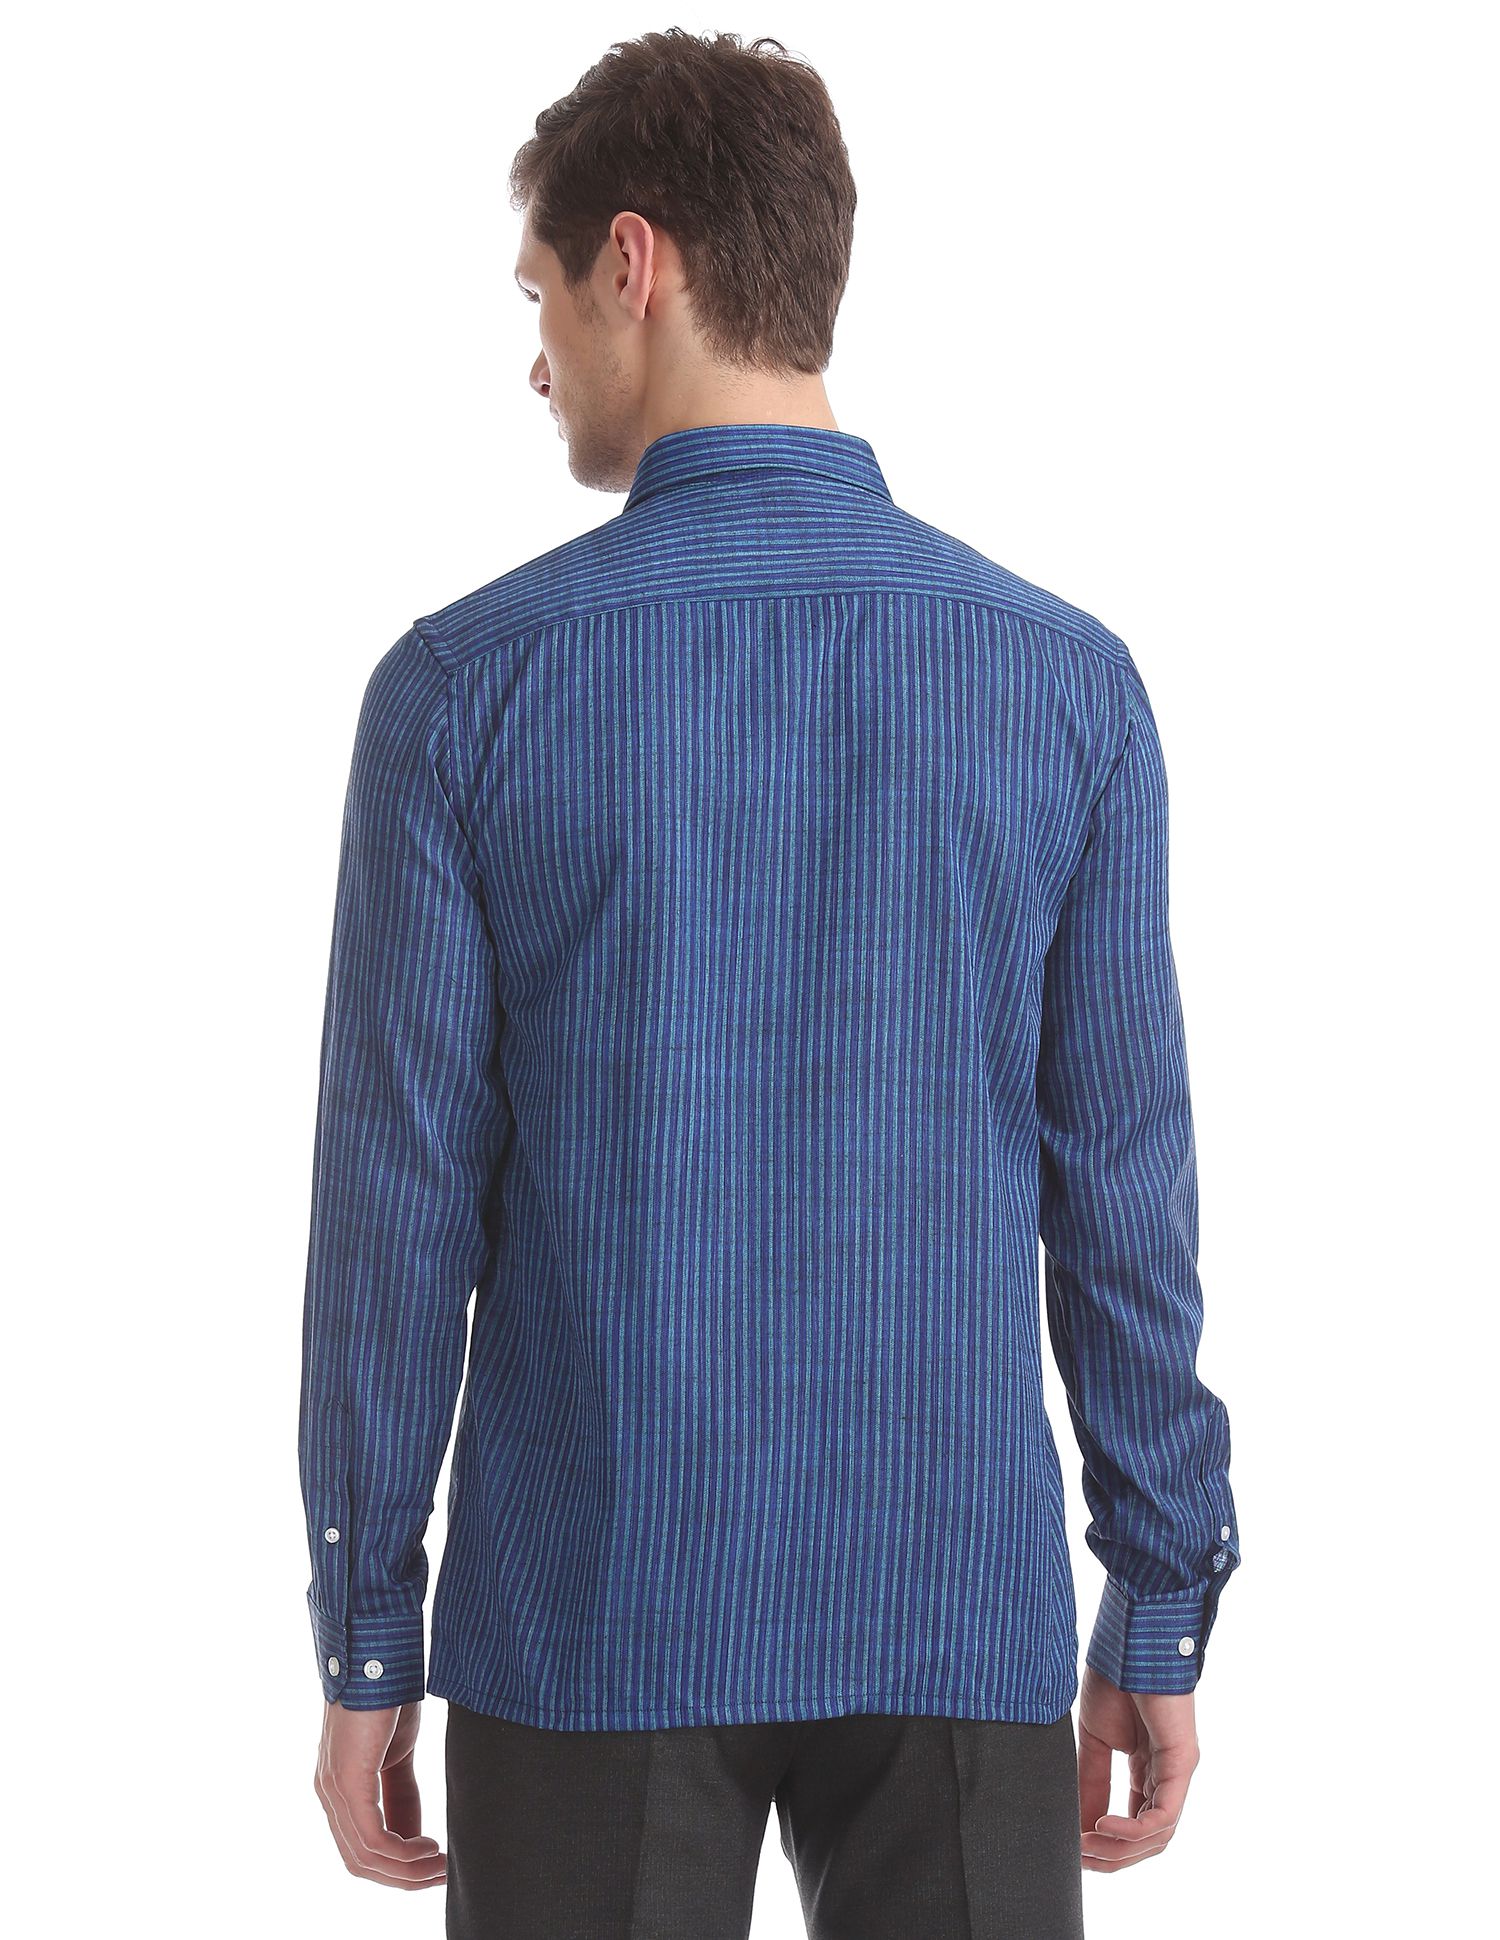 Excalibur Cotton Blend Blue Stripes Formal Shirt - Buy Excalibur Cotton ...